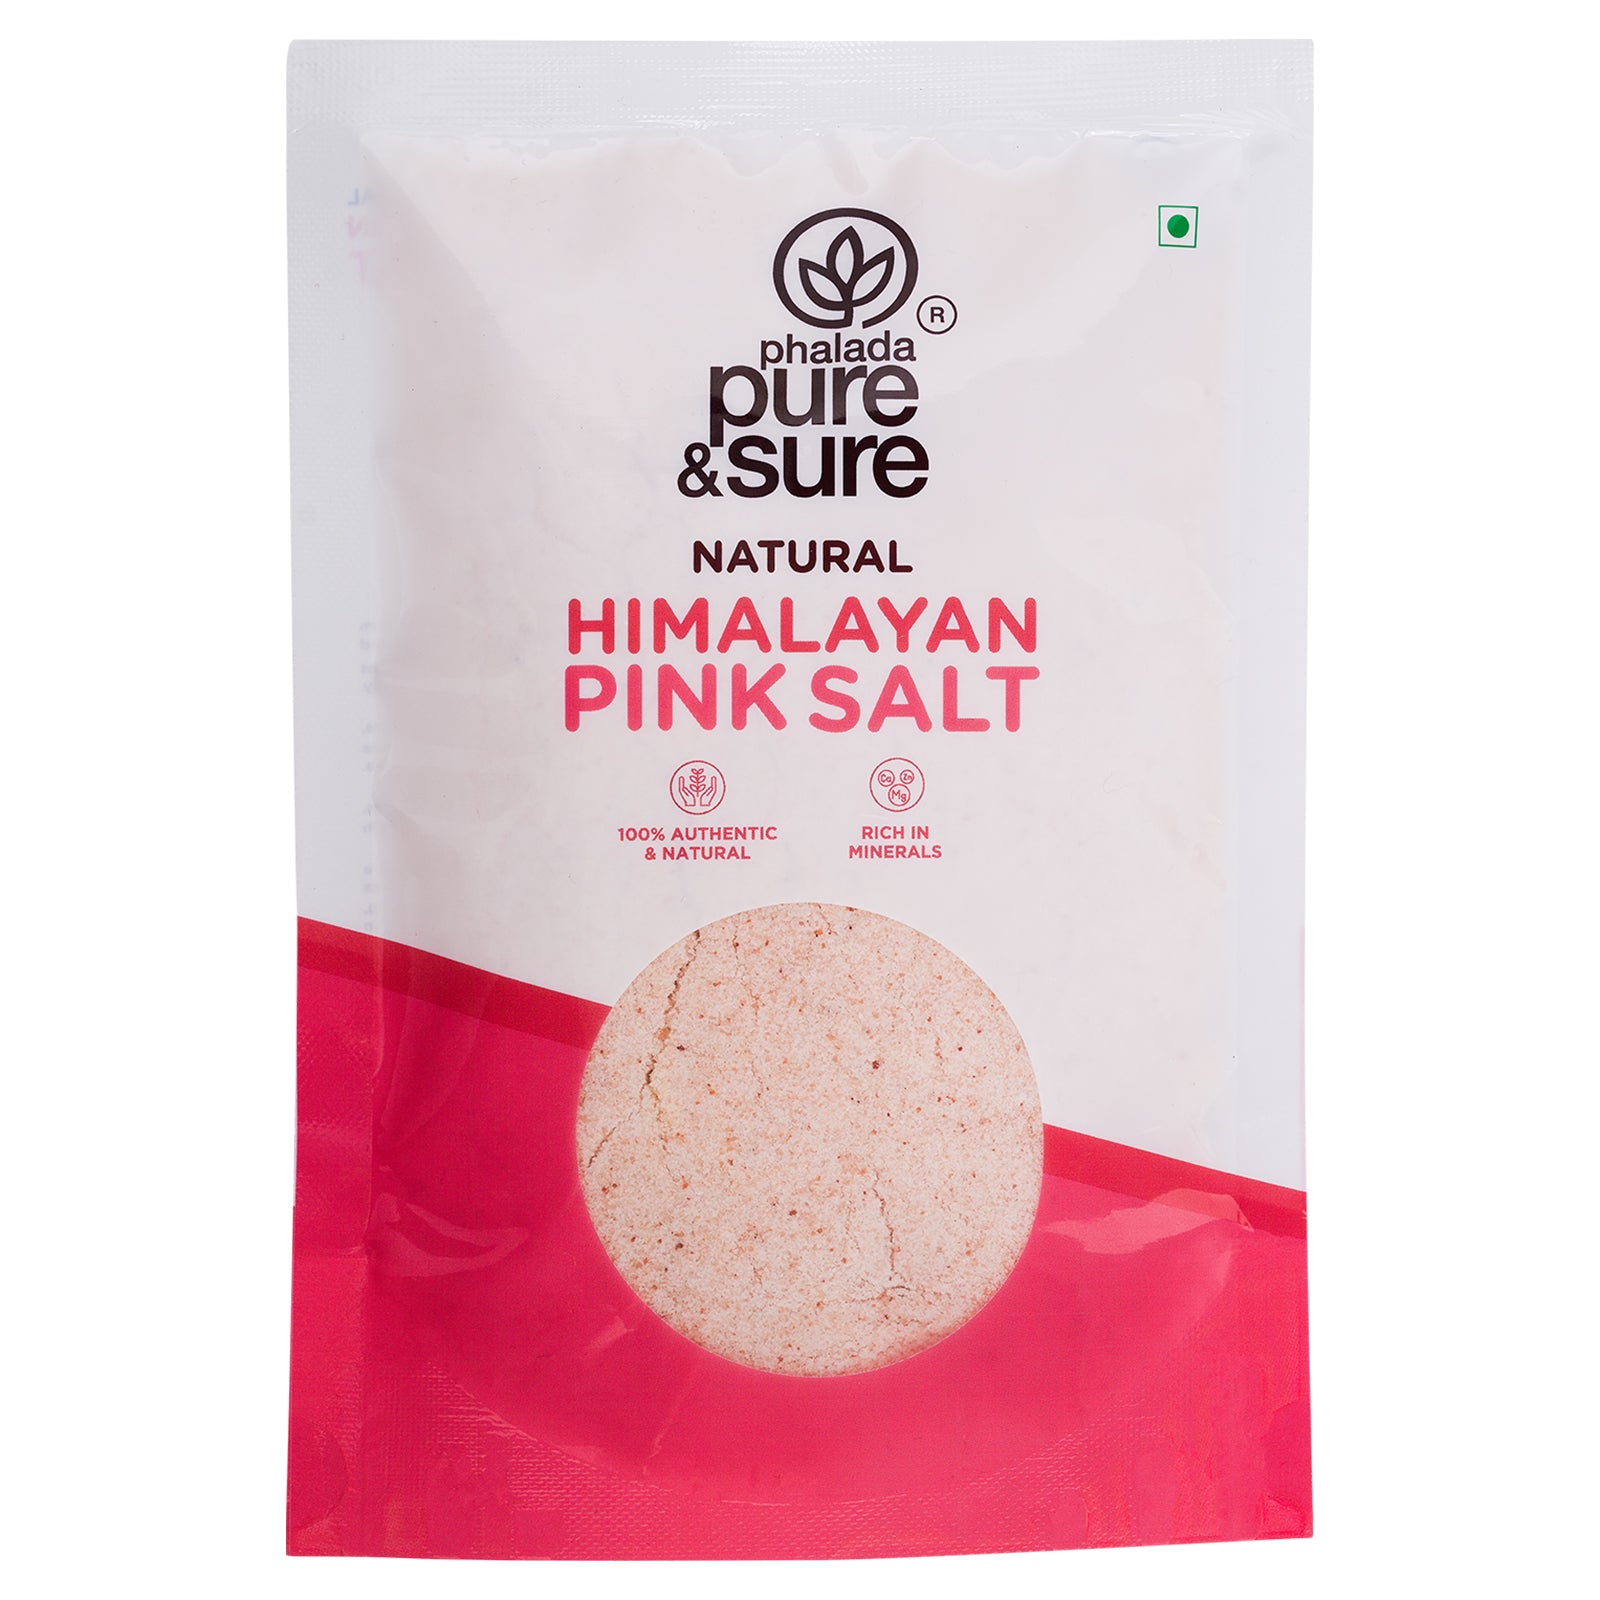 PURE & SURE Himalayan Pink Salt, 500g